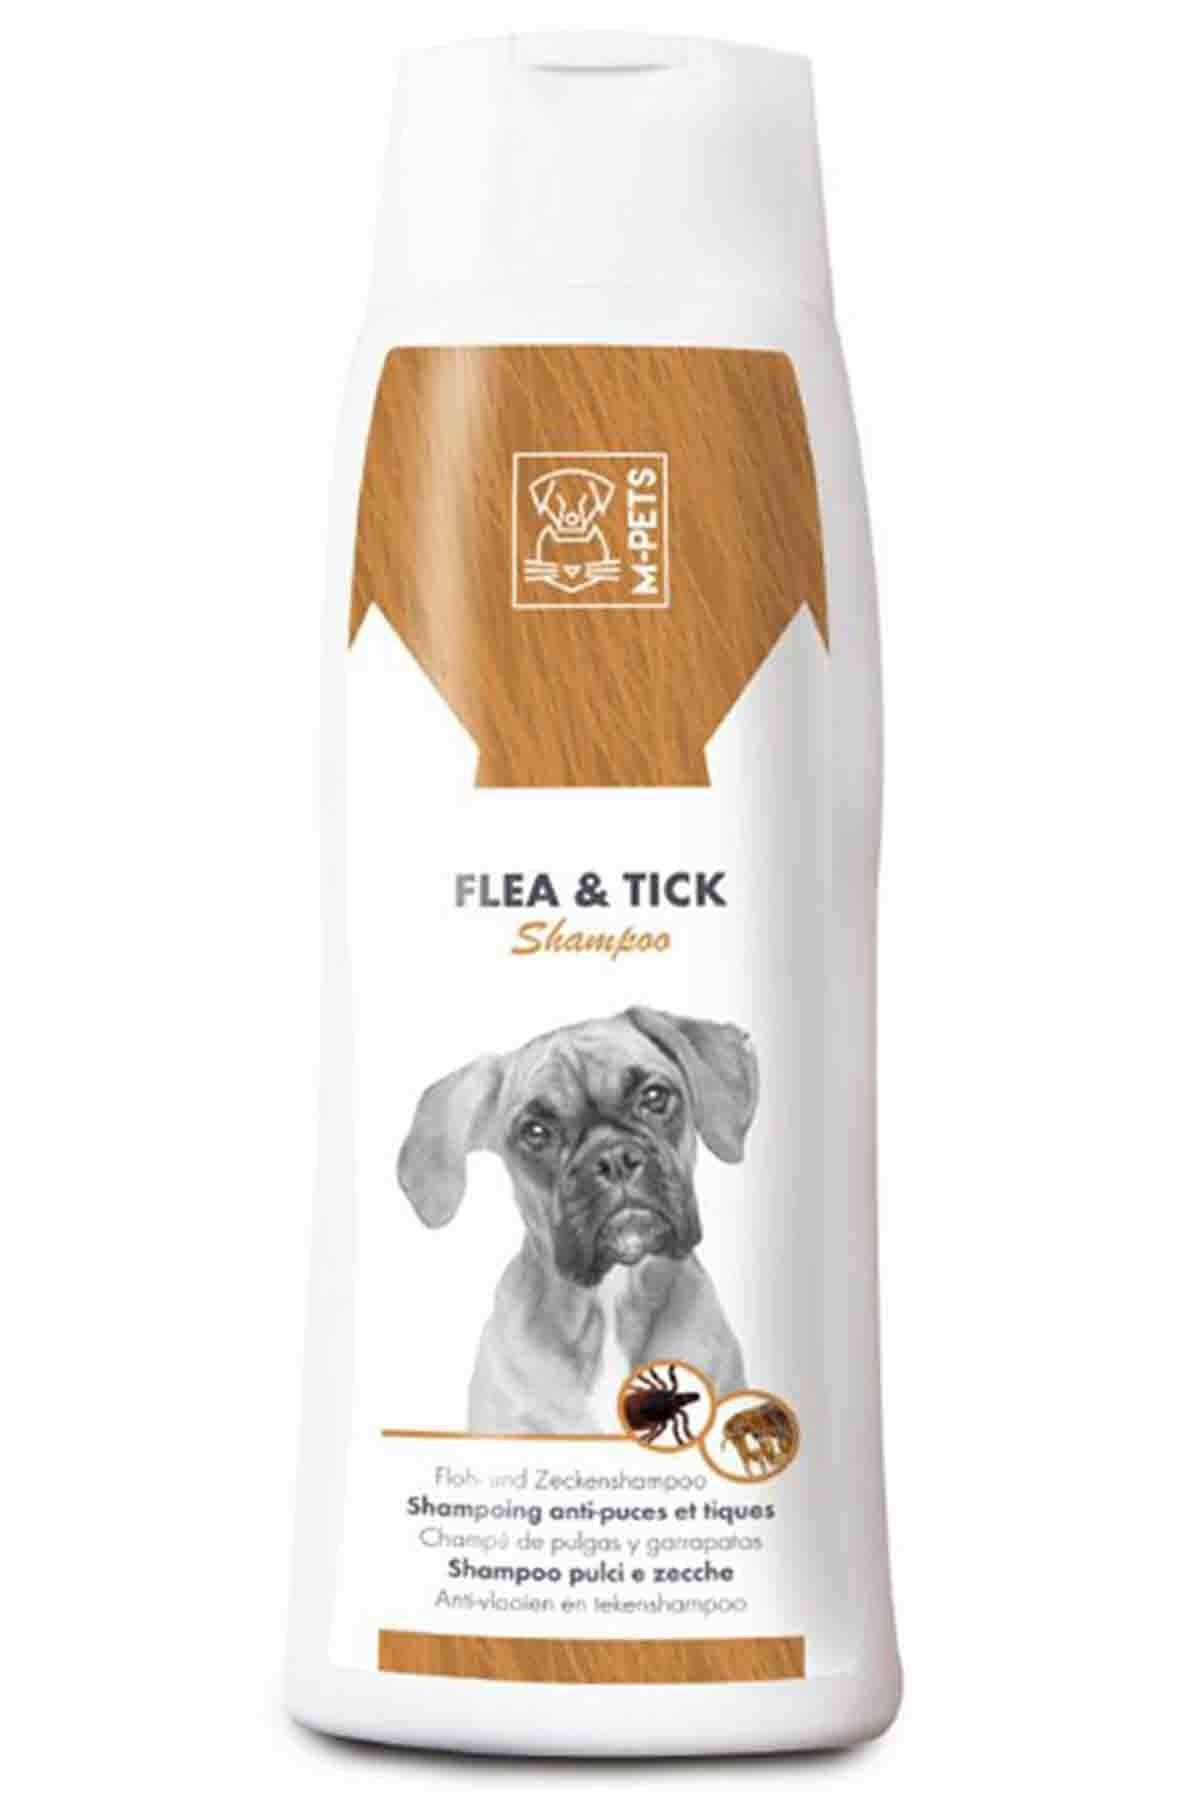 Lider Fl ea Tic k Köpek Şampuanı köpek para zit köpek pire yok edici hassas deriler köpek deri bakım 250ml